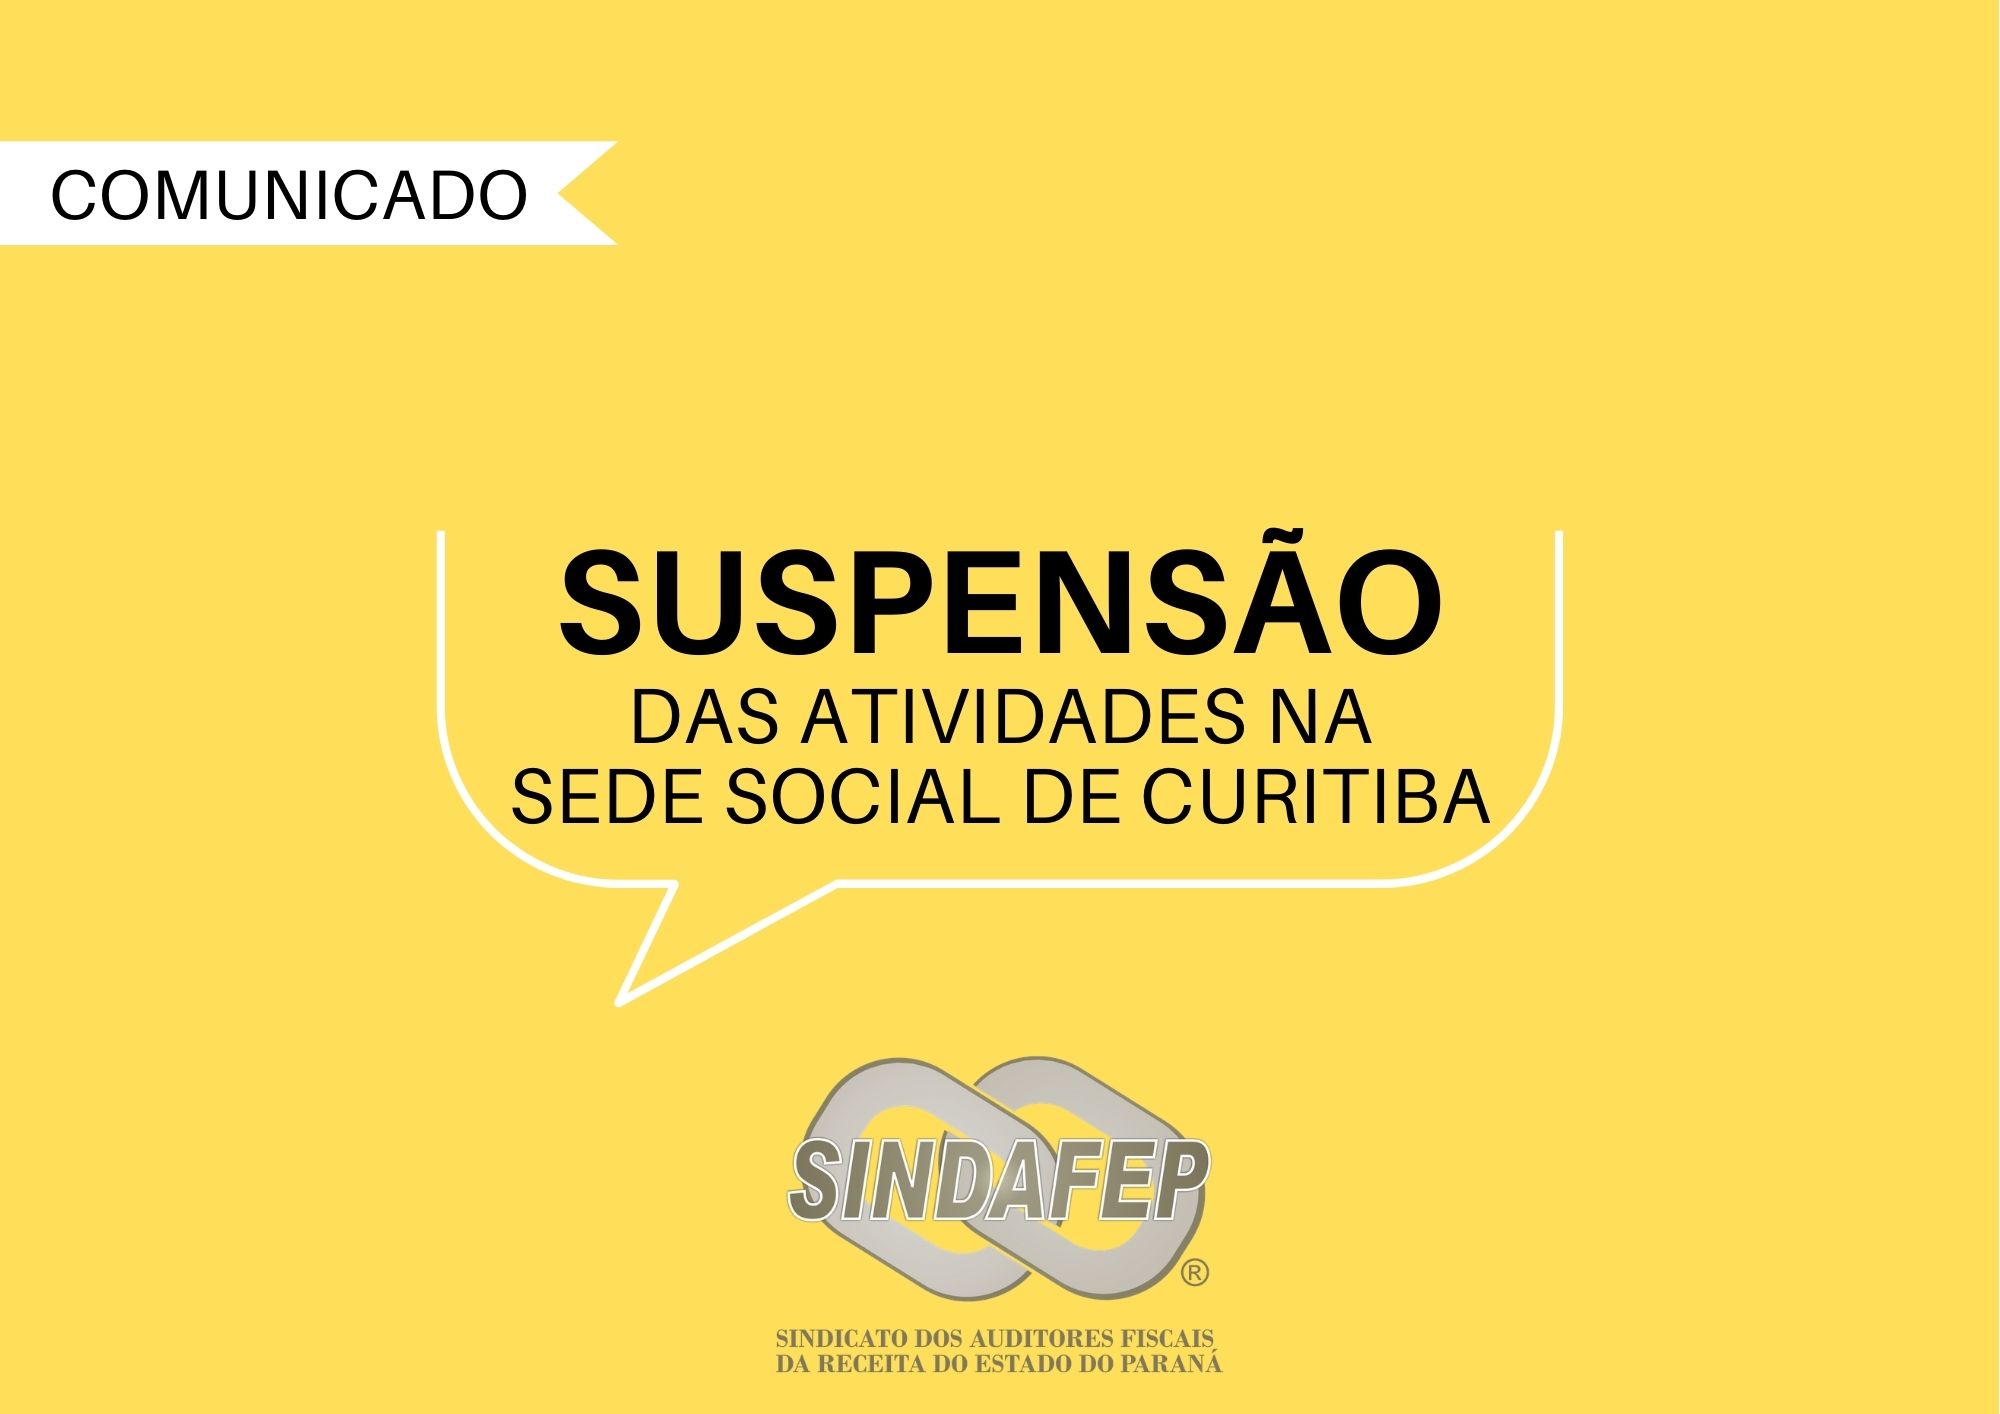 Sindafep prorroga suspensão de atividades na sede social de Curitiba por mais 31 dias